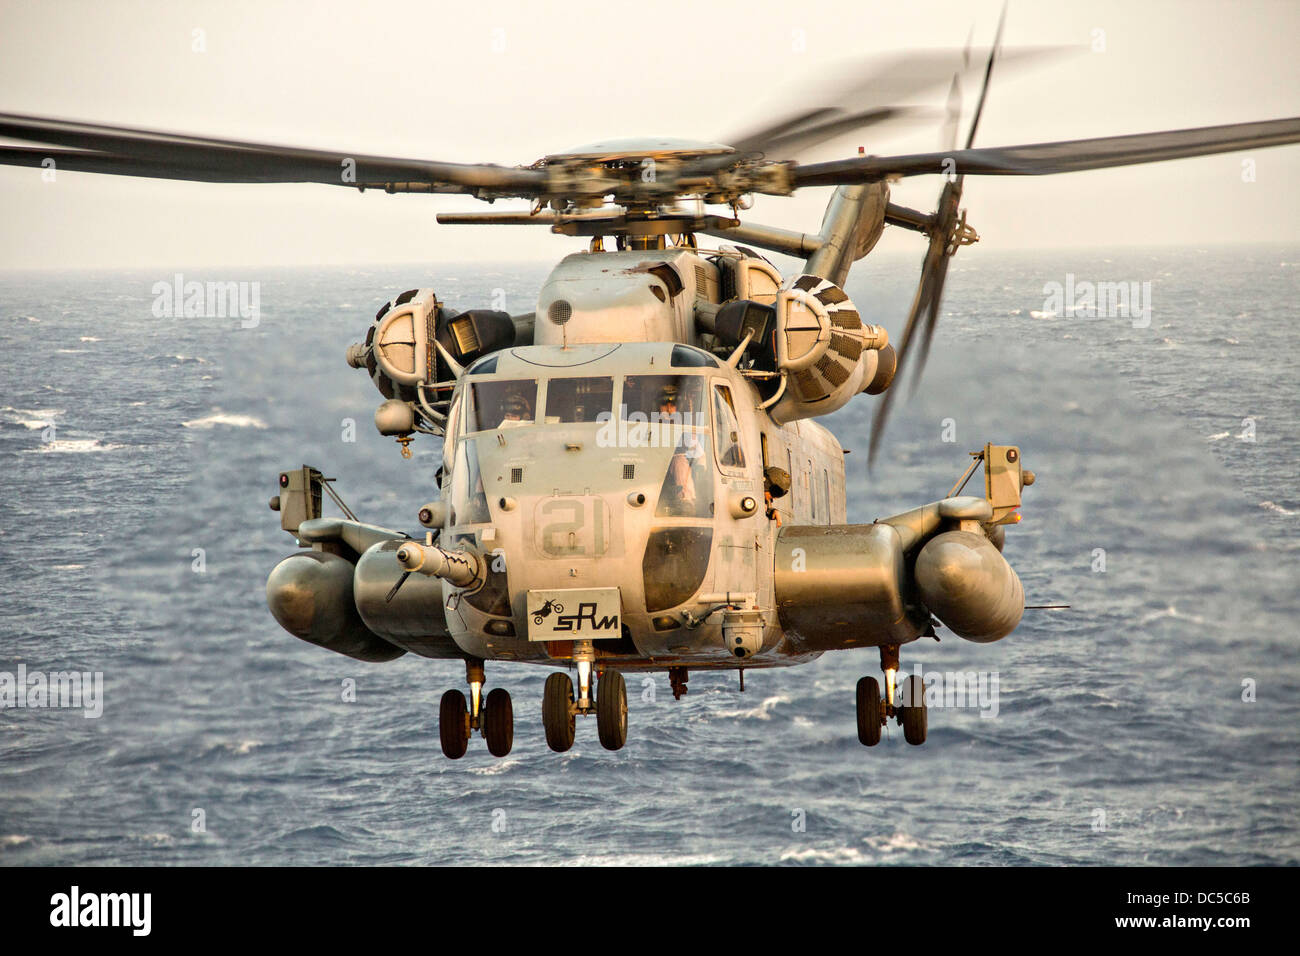 Un US Marine Corps del tipo CH-53E Super Stallion helicóptero se prepara para aterrizar en la cubierta de vuelo del USS San Antonio Julio 19, 2013 en el Mar Arábigo. Foto de stock